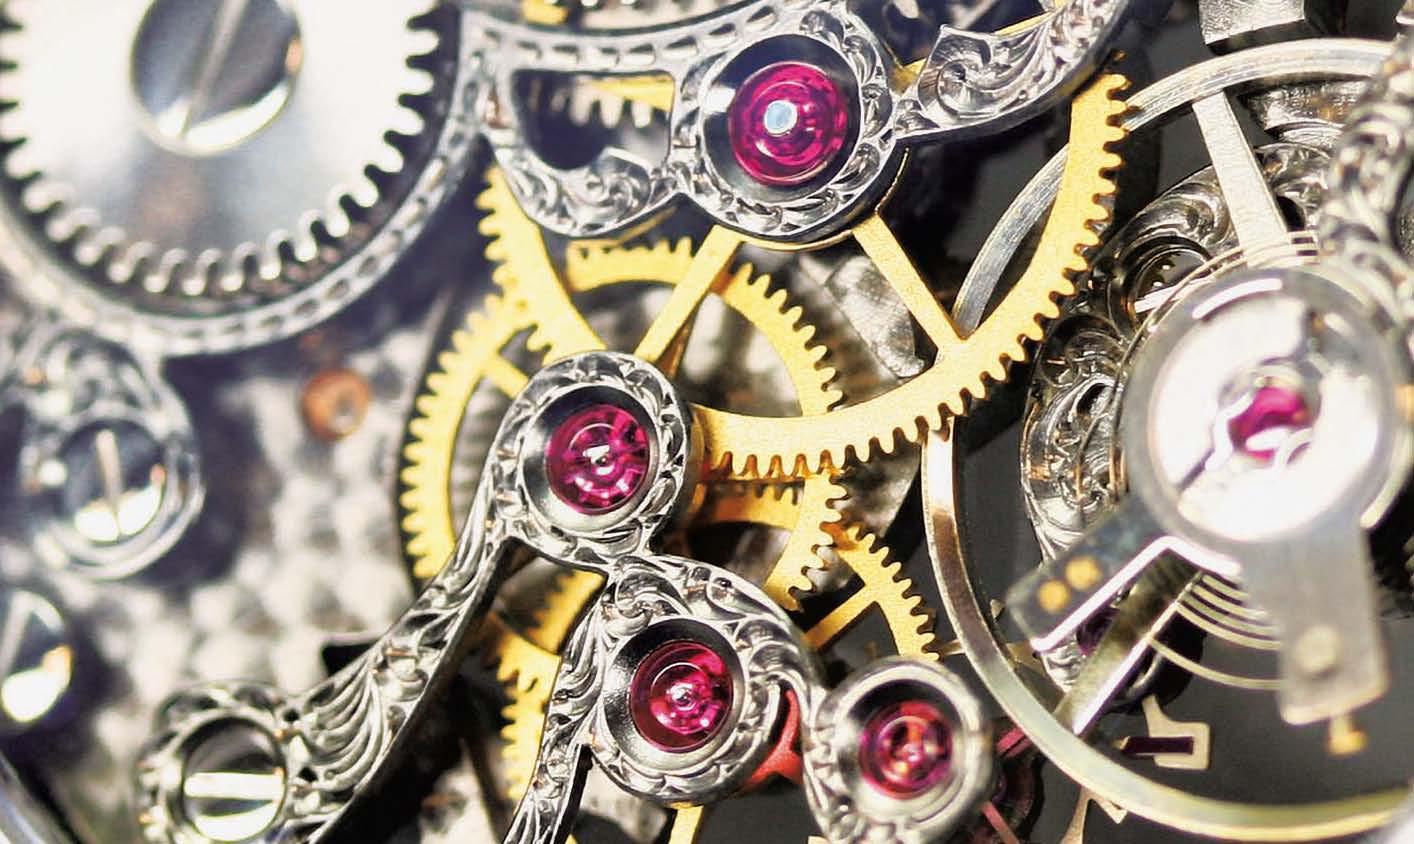 Chân kính - Jewel là gì trong bộ máy đồng hồ?